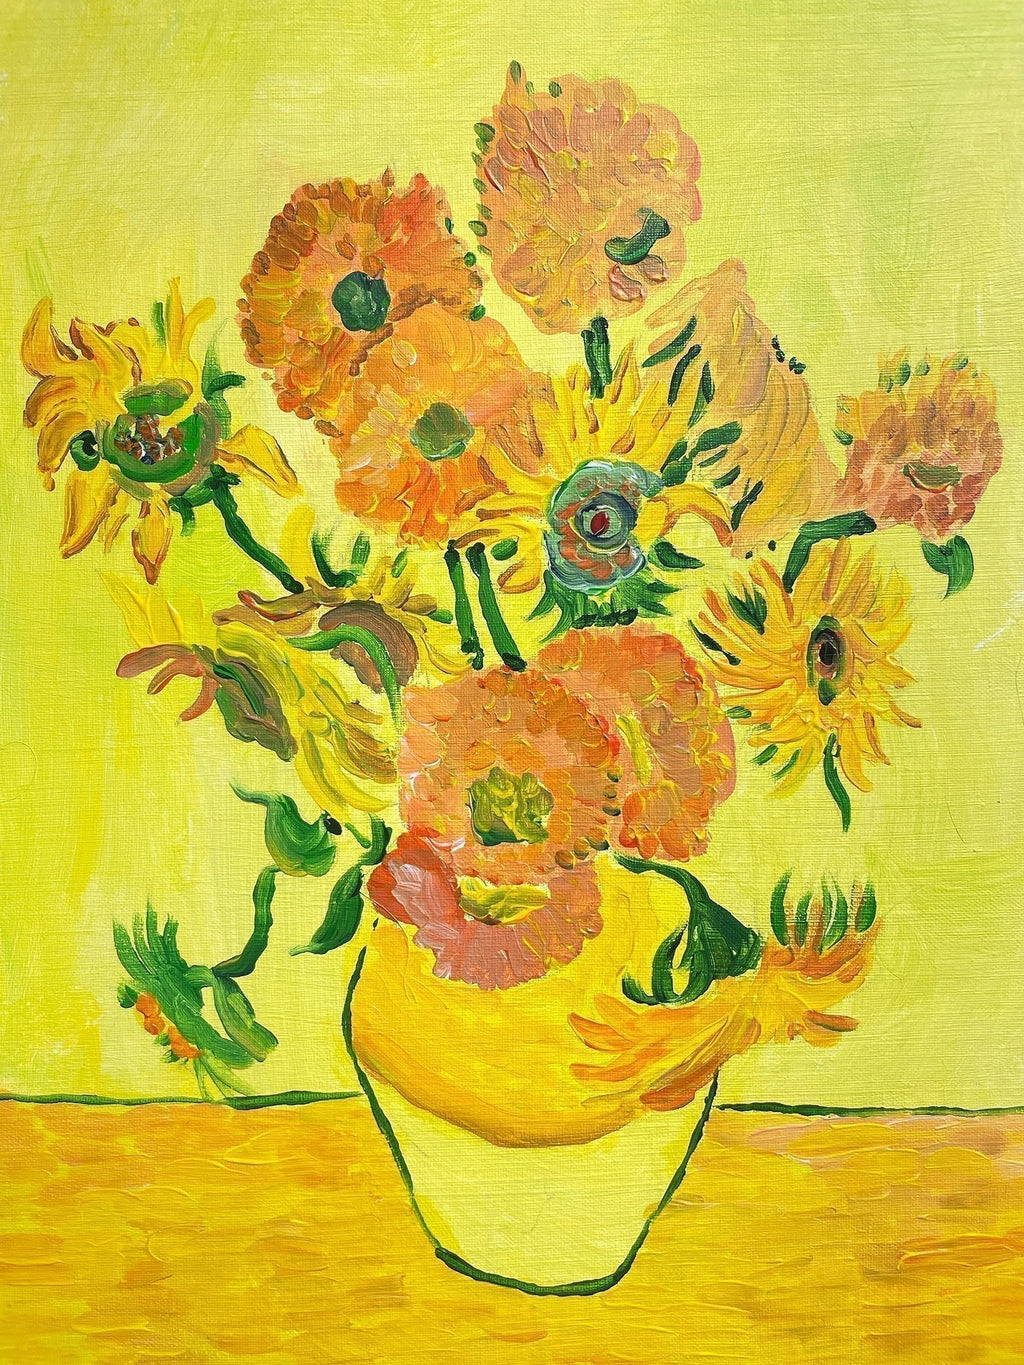 【上野/根津】10月1日(日) 16:00-18:30 | フィンセント・ファン・ゴッホ | ひまわり（Sunflower by Vincent van Gogh at Ueno/Nezu）